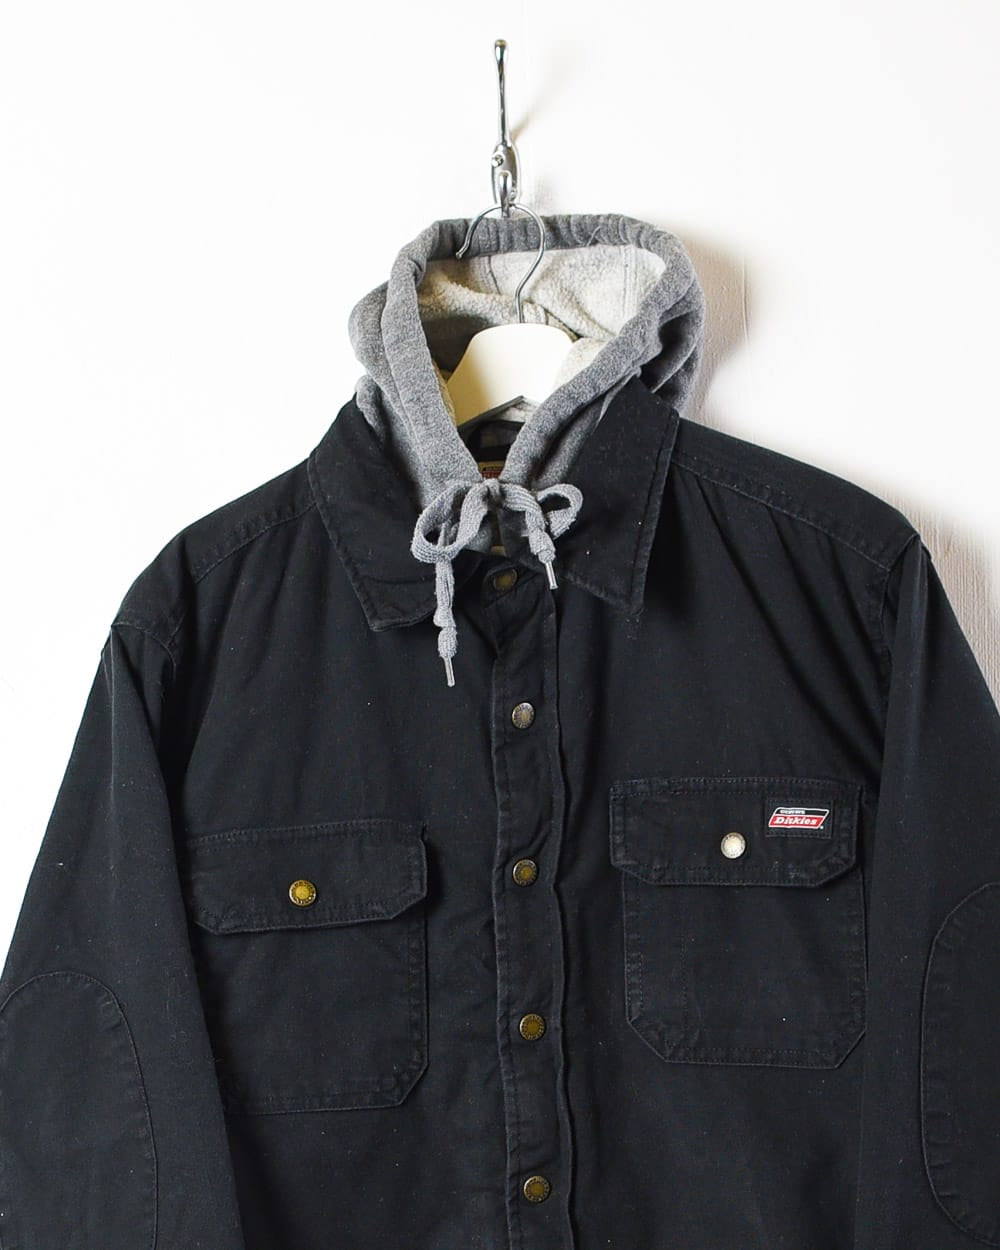 Black Dickies Padded Hooded Overshirt Jacket - Medium